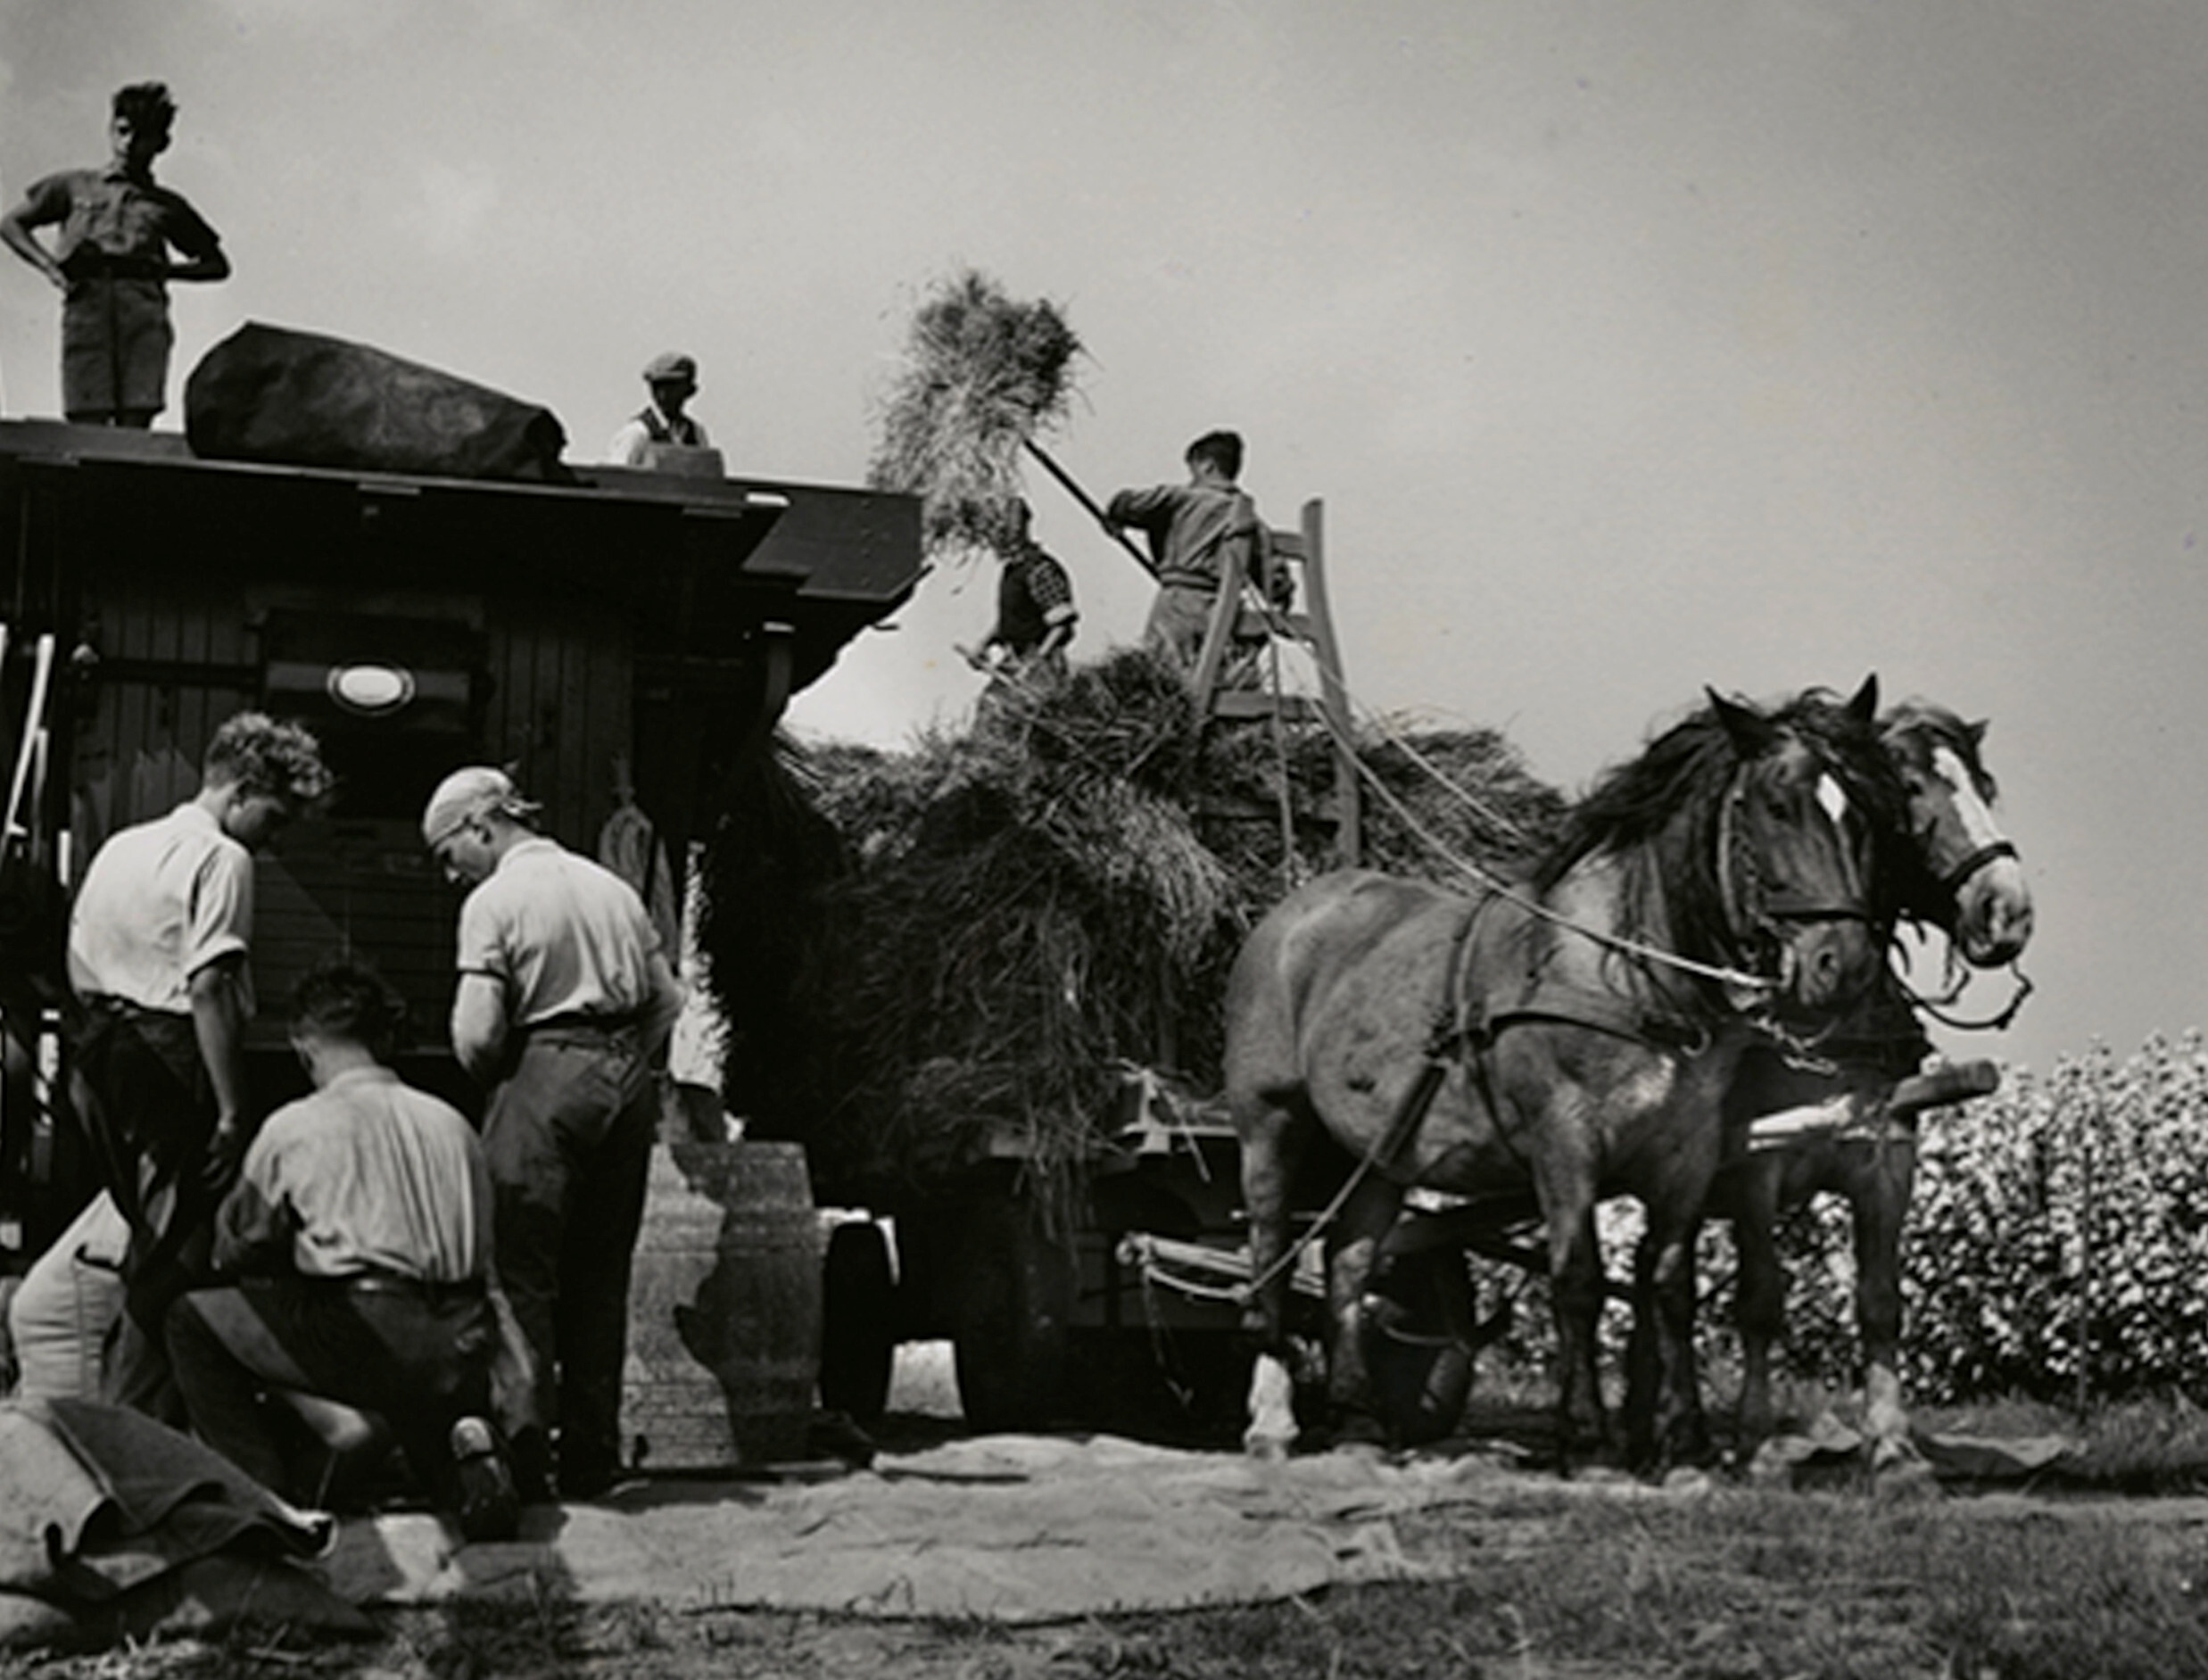 Еврейская молодежь перевозит сено, Werkdorp Nieuwesluis, Вирингермеер, Нидерланды, ок. 1938 г. Фотограф Роман Вишняк